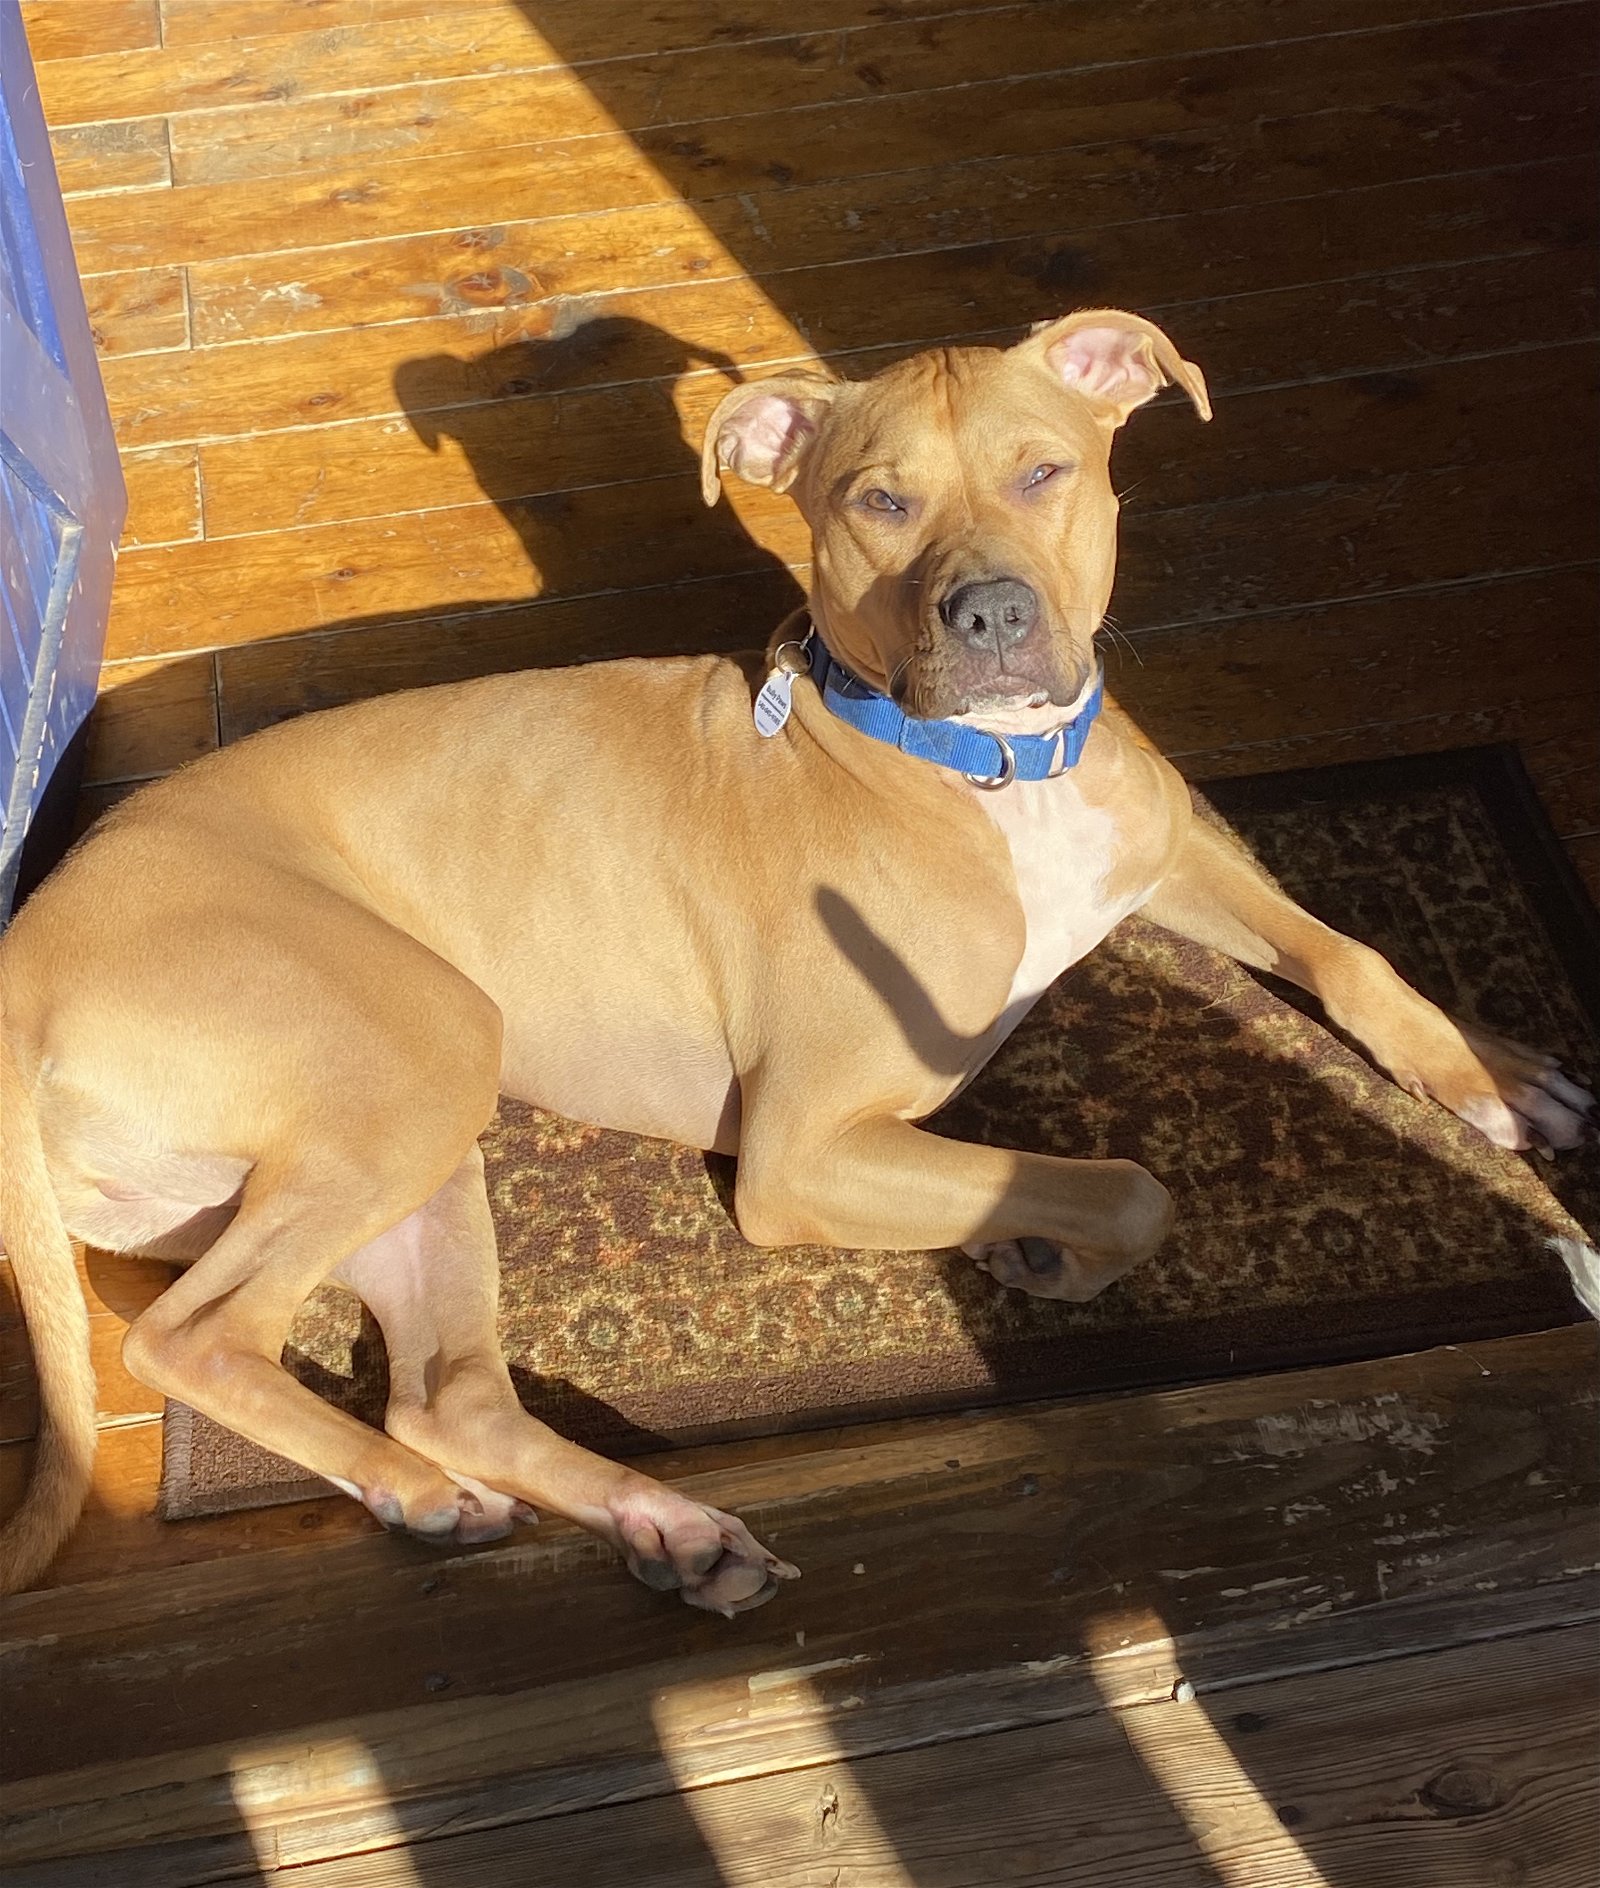 adoptable Dog in Spotsylvania, VA named Woody, aka Woodrow